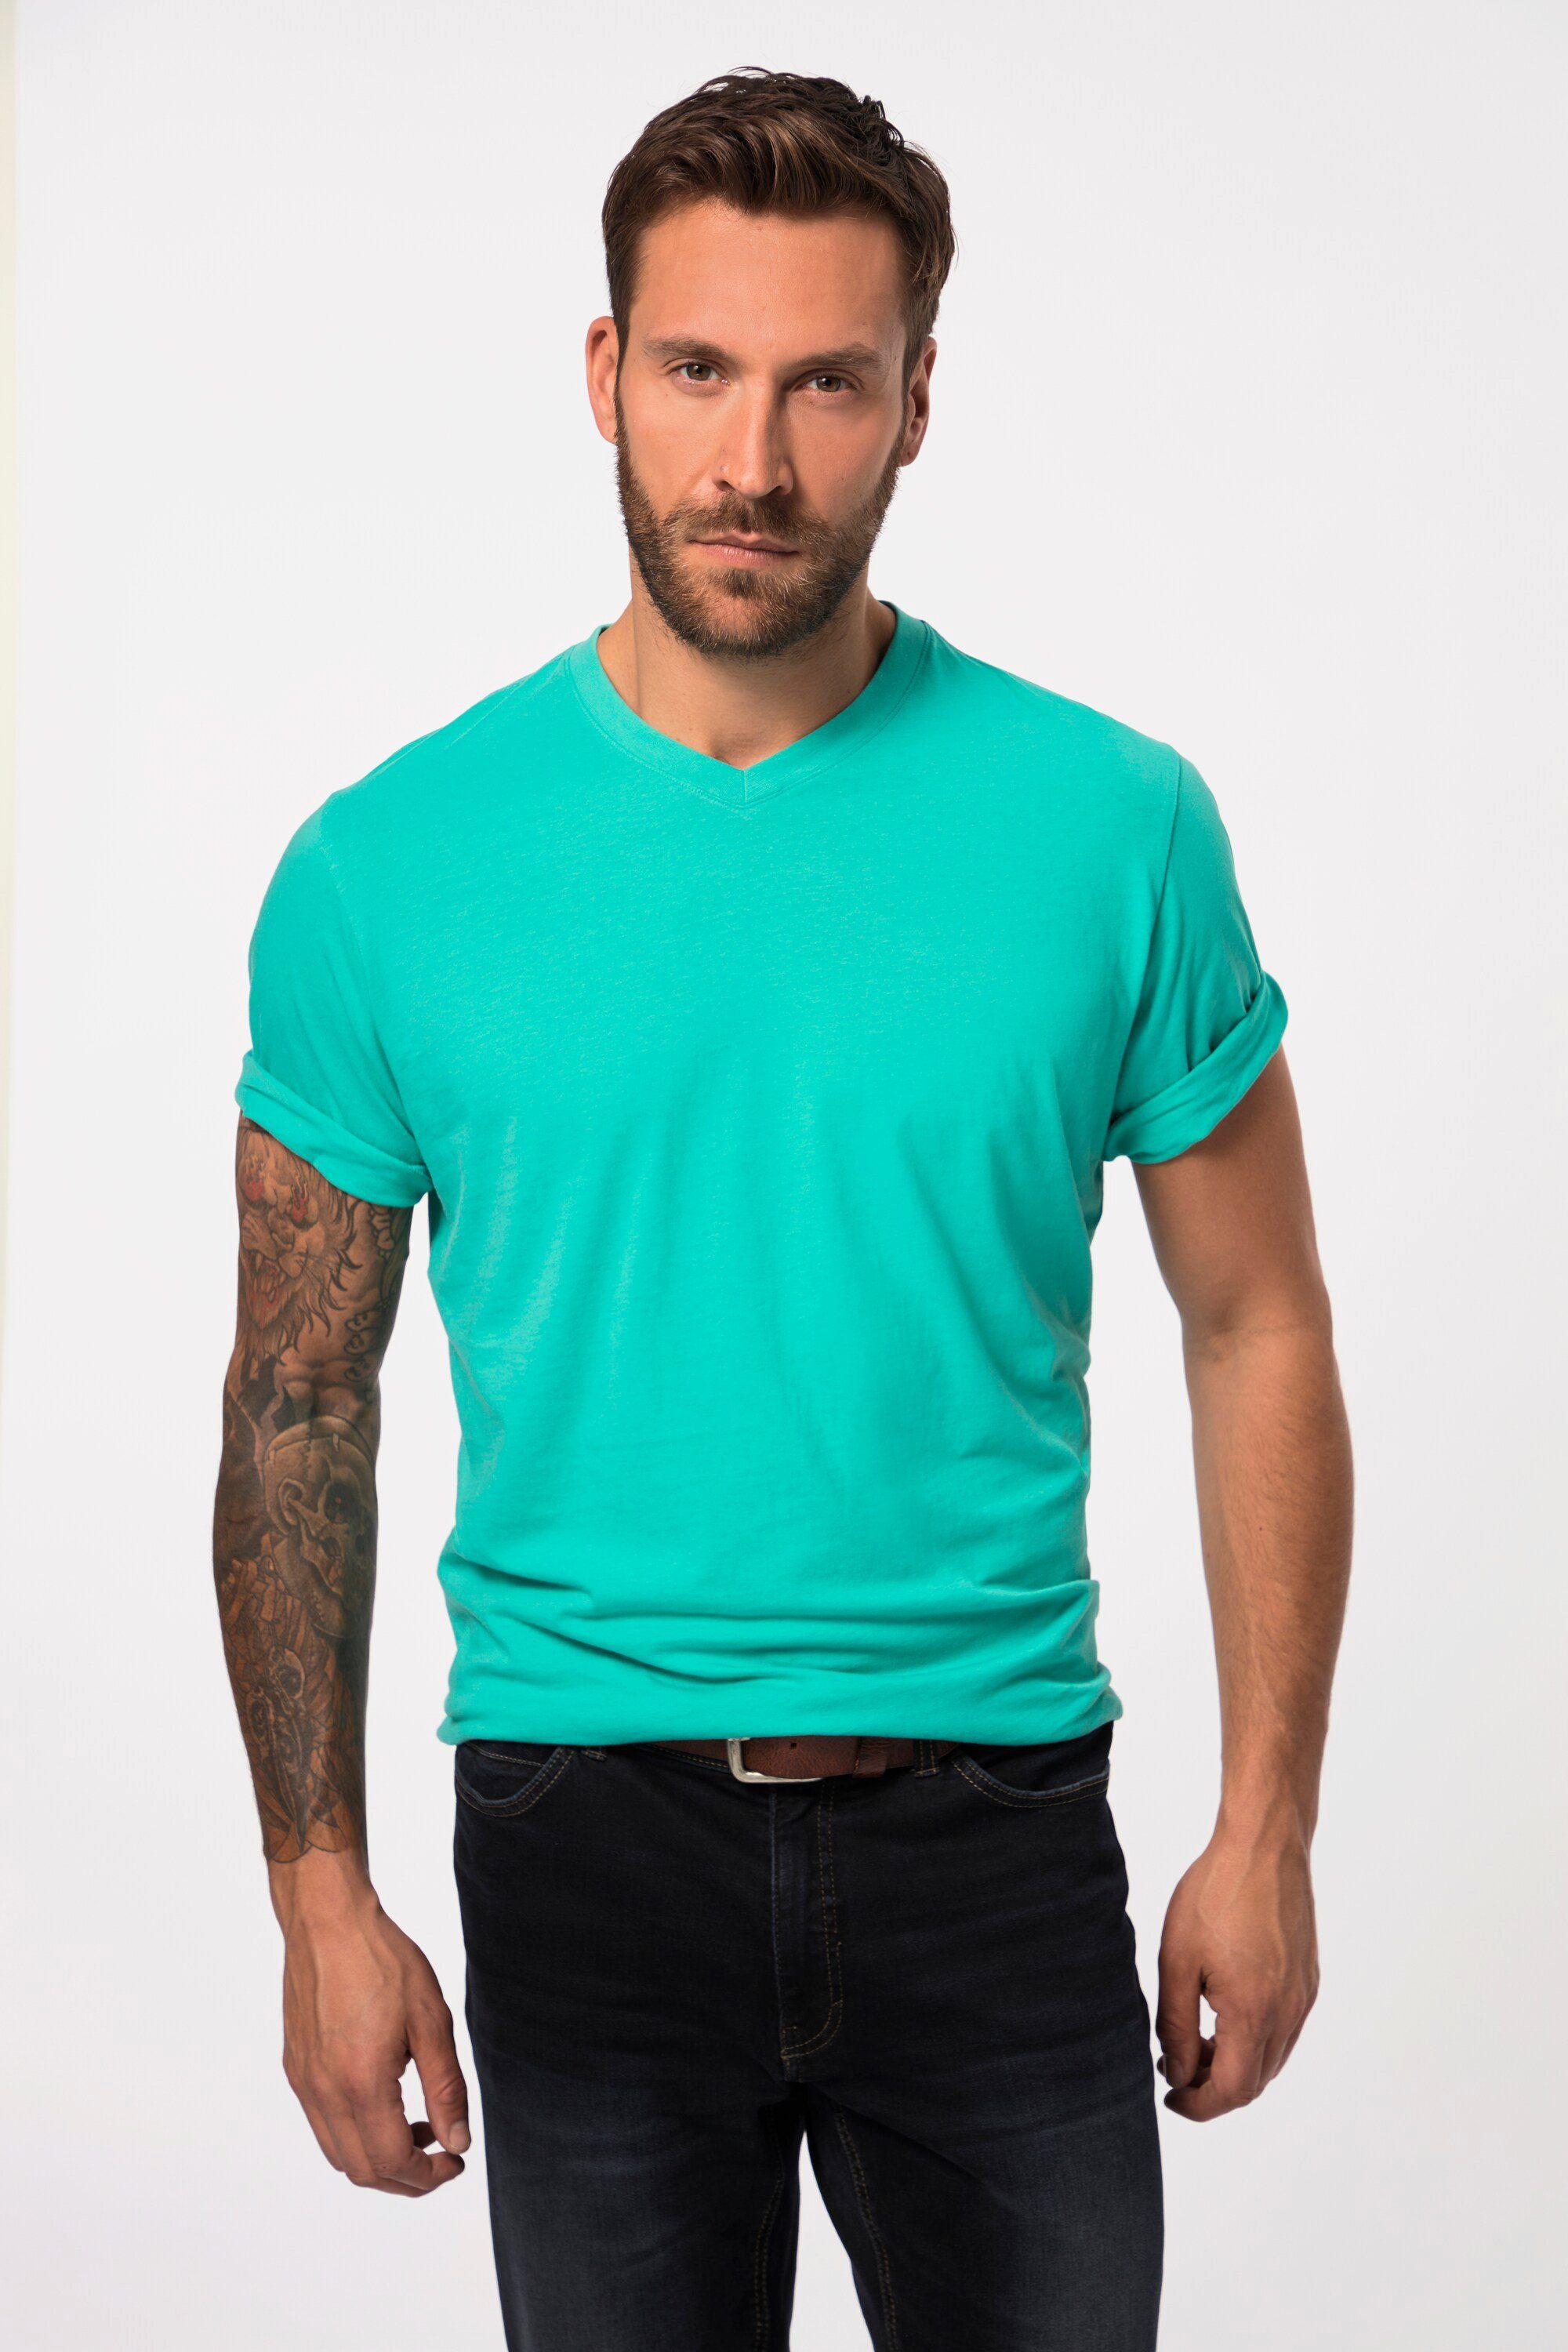 JP1880 T-Shirt karibikgrün helles T-Shirt V-Ausschnitt Basic 8XL bis